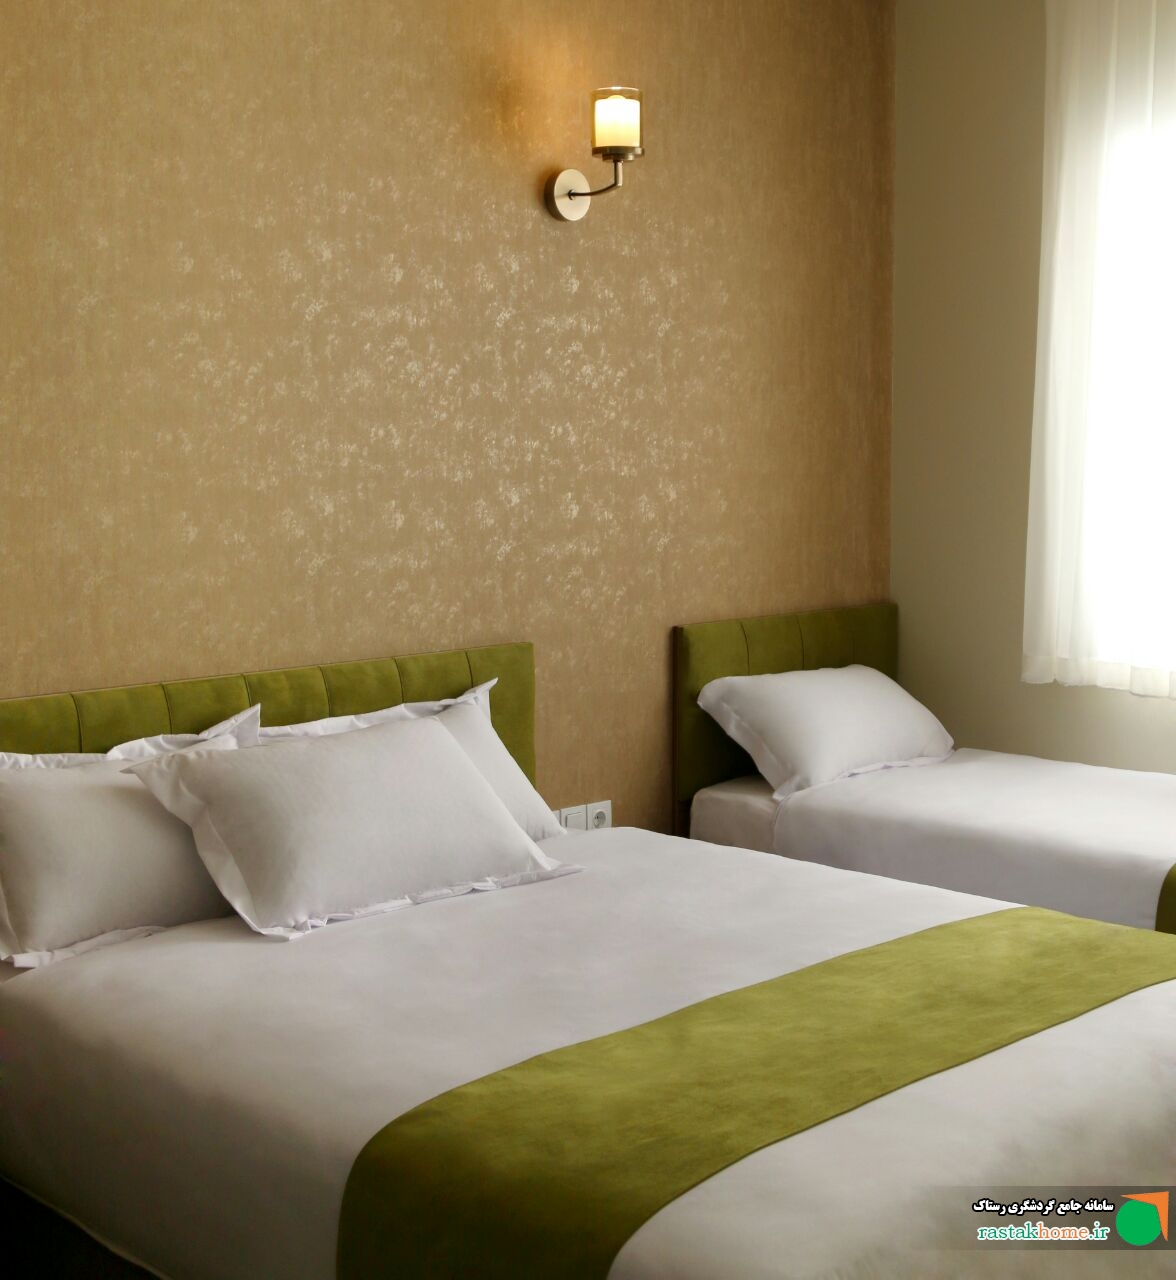 اتاق سه تخت( فامیلی )در هتل ،کافه مینو قزوین با صبحانه رایگان